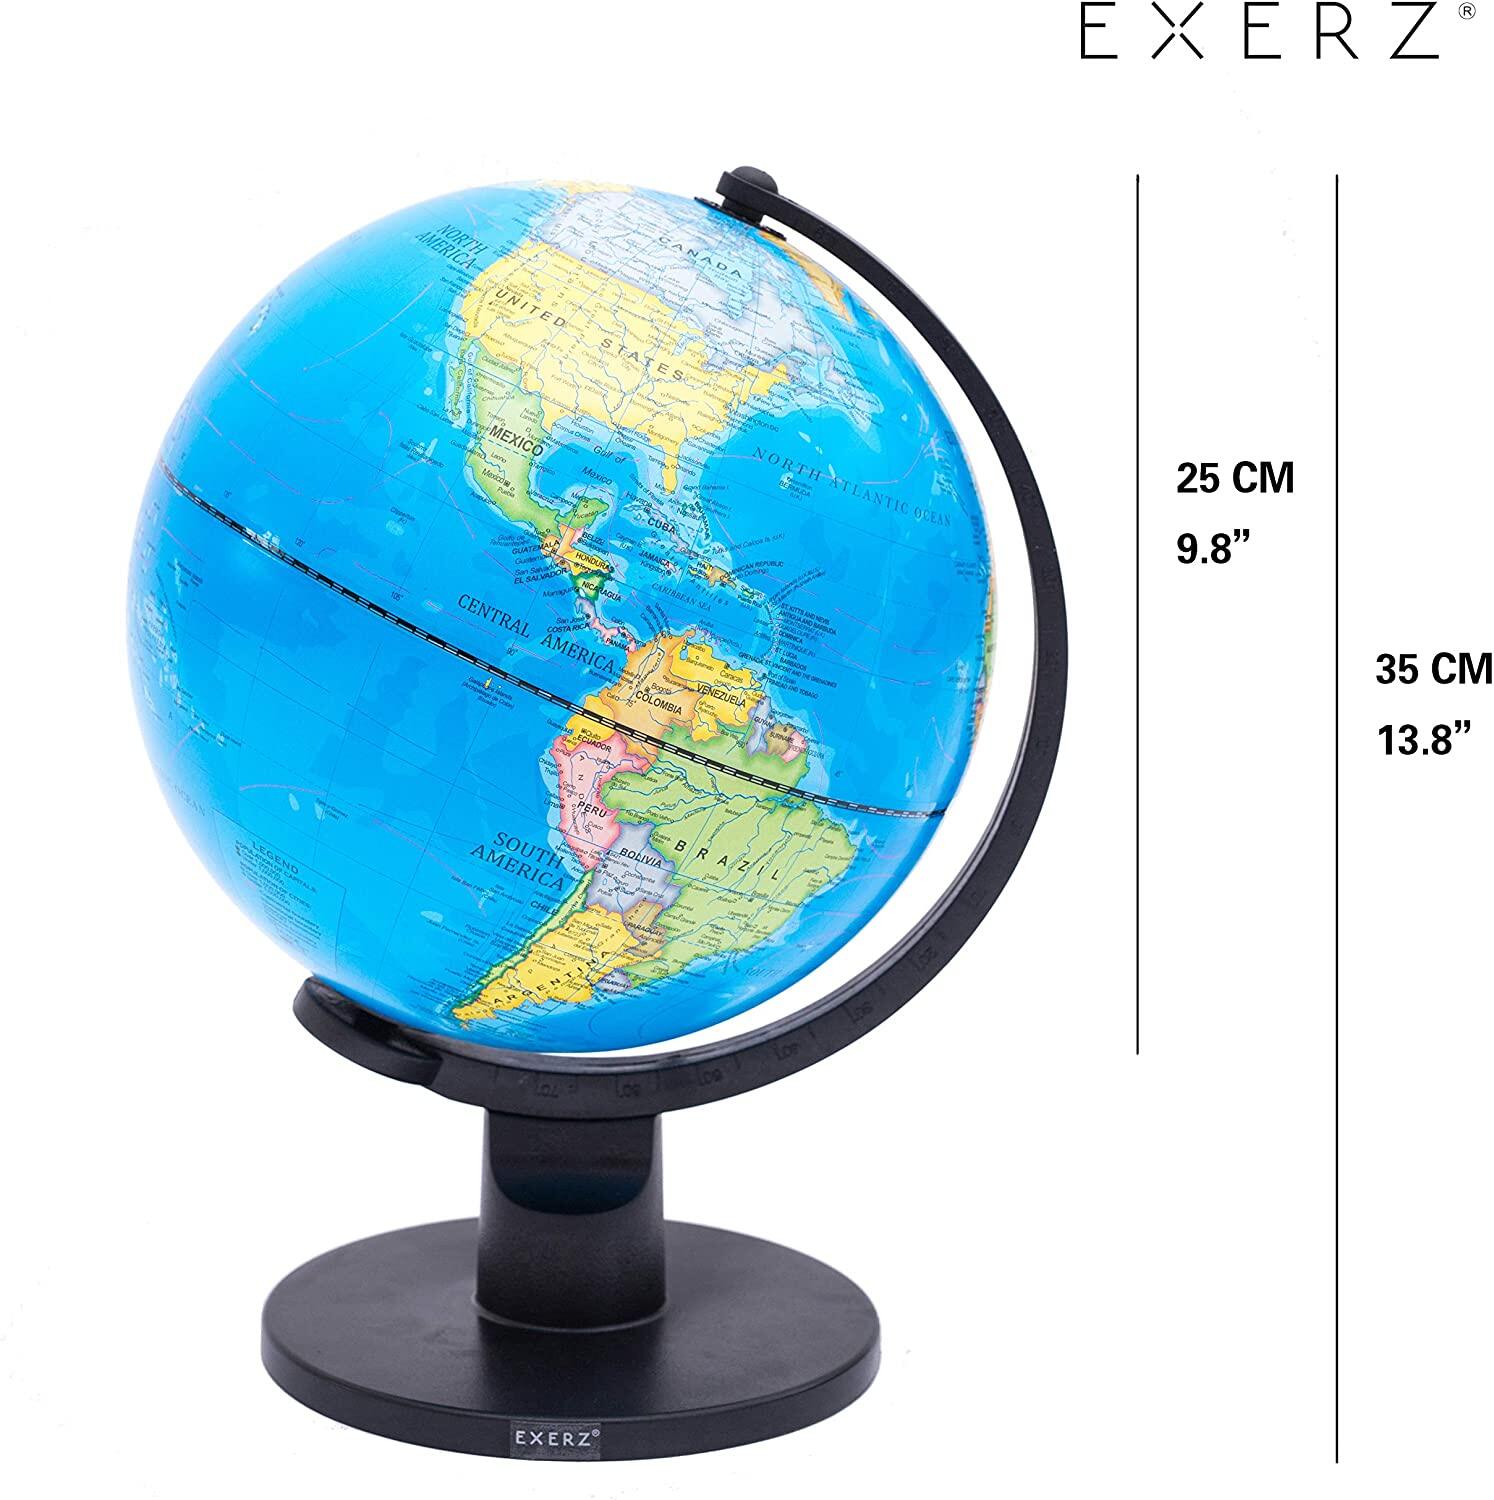 25 cm Globe World Map ATLAS girevole con supporto educativo perfetto regalo UK 